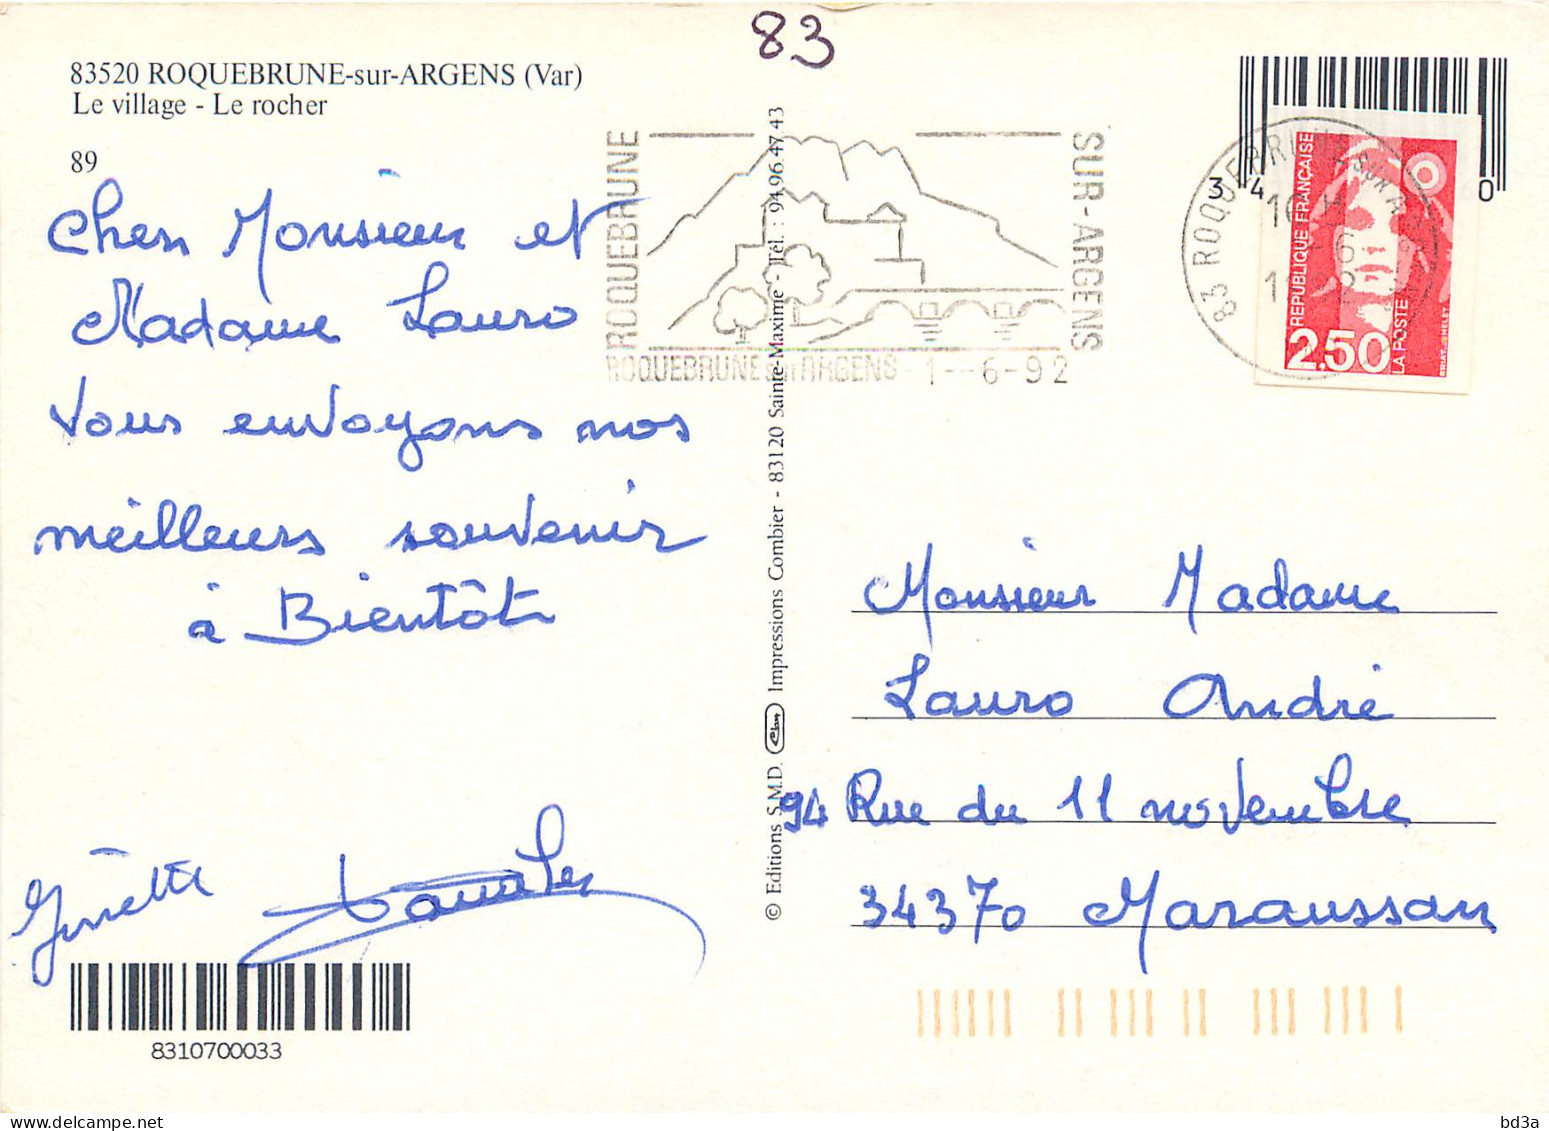 83 - ROQUEBRUNE SUR ARGENS MULTIVUES - Roquebrune-sur-Argens